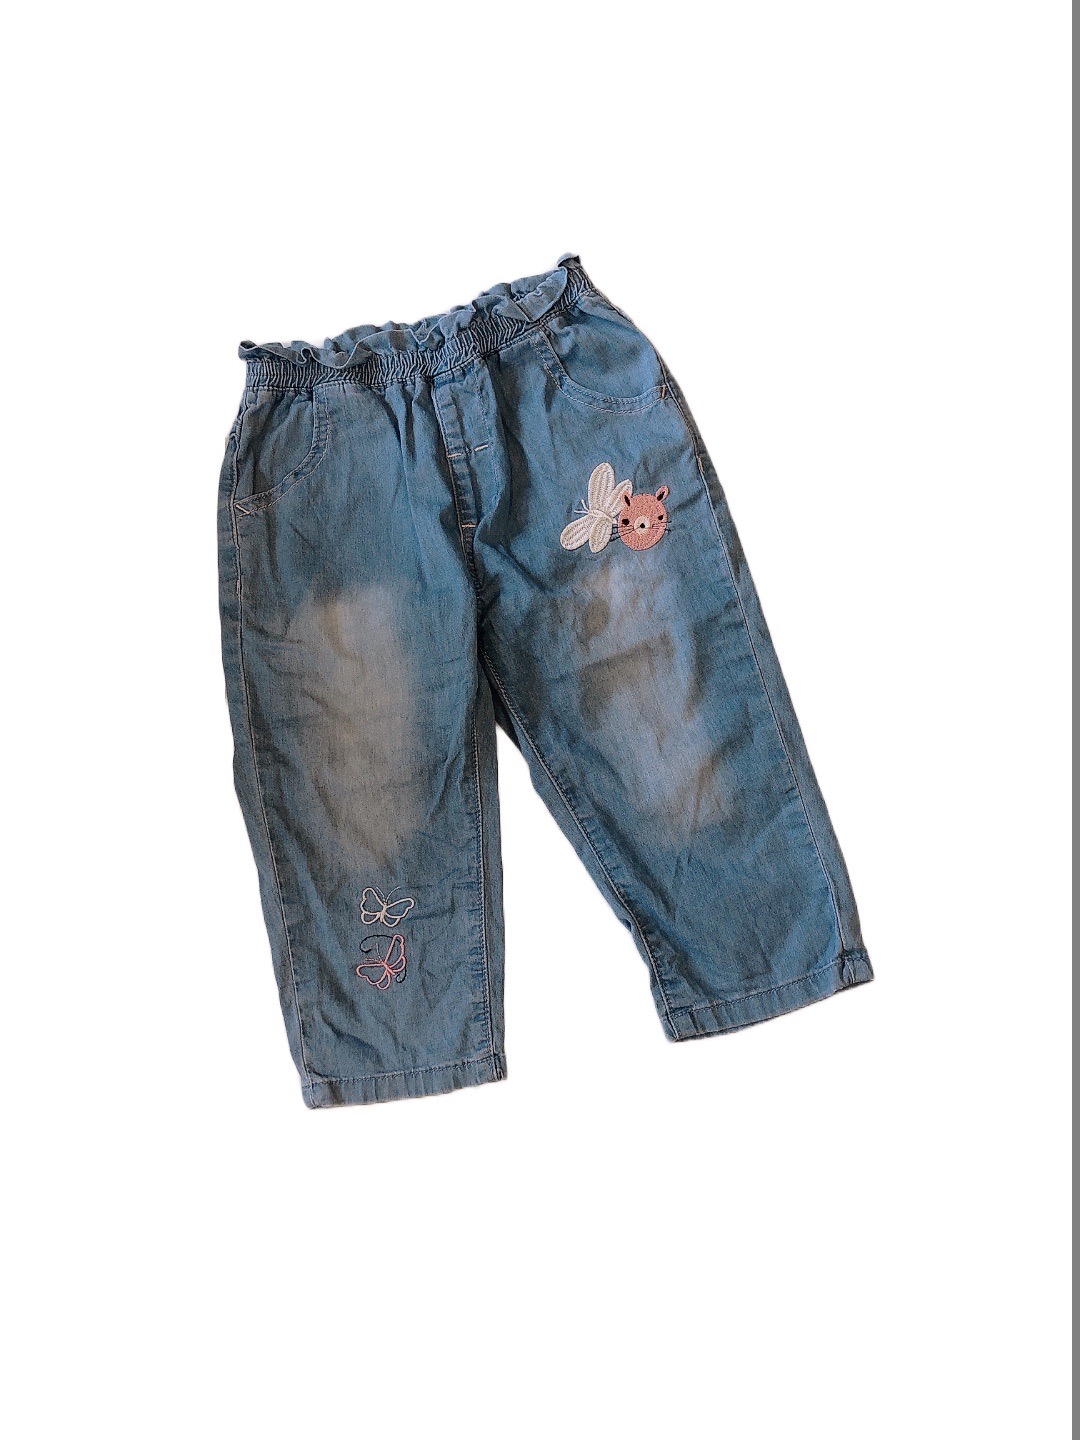 輕薄造型兒童牛仔褲(120)
NT$89